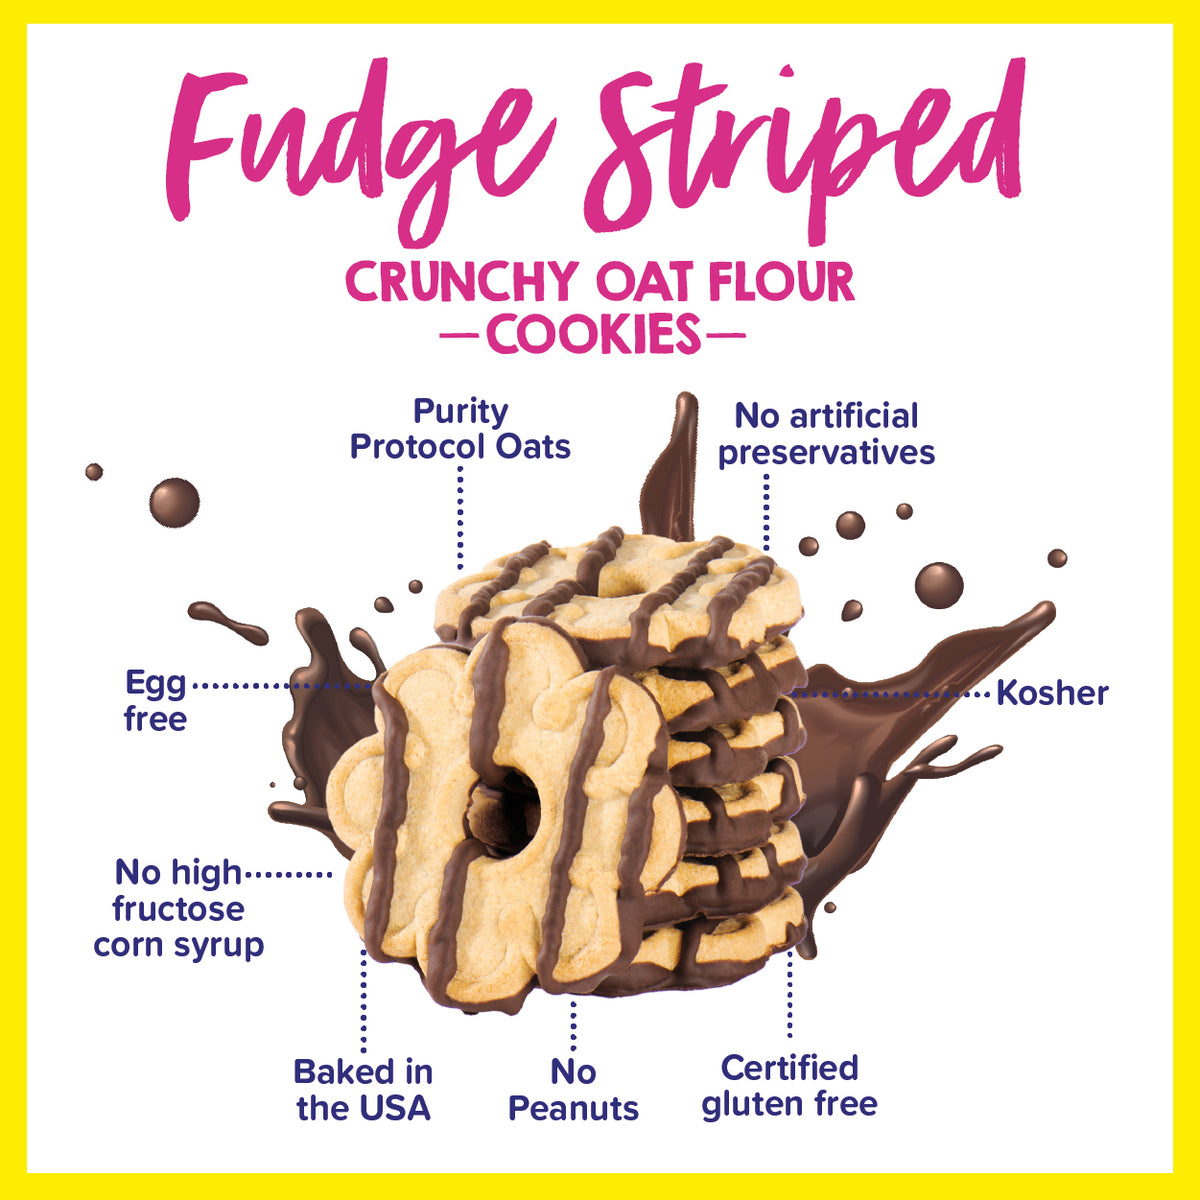 Fudge Striped Crunchy Oat Flour Cookies